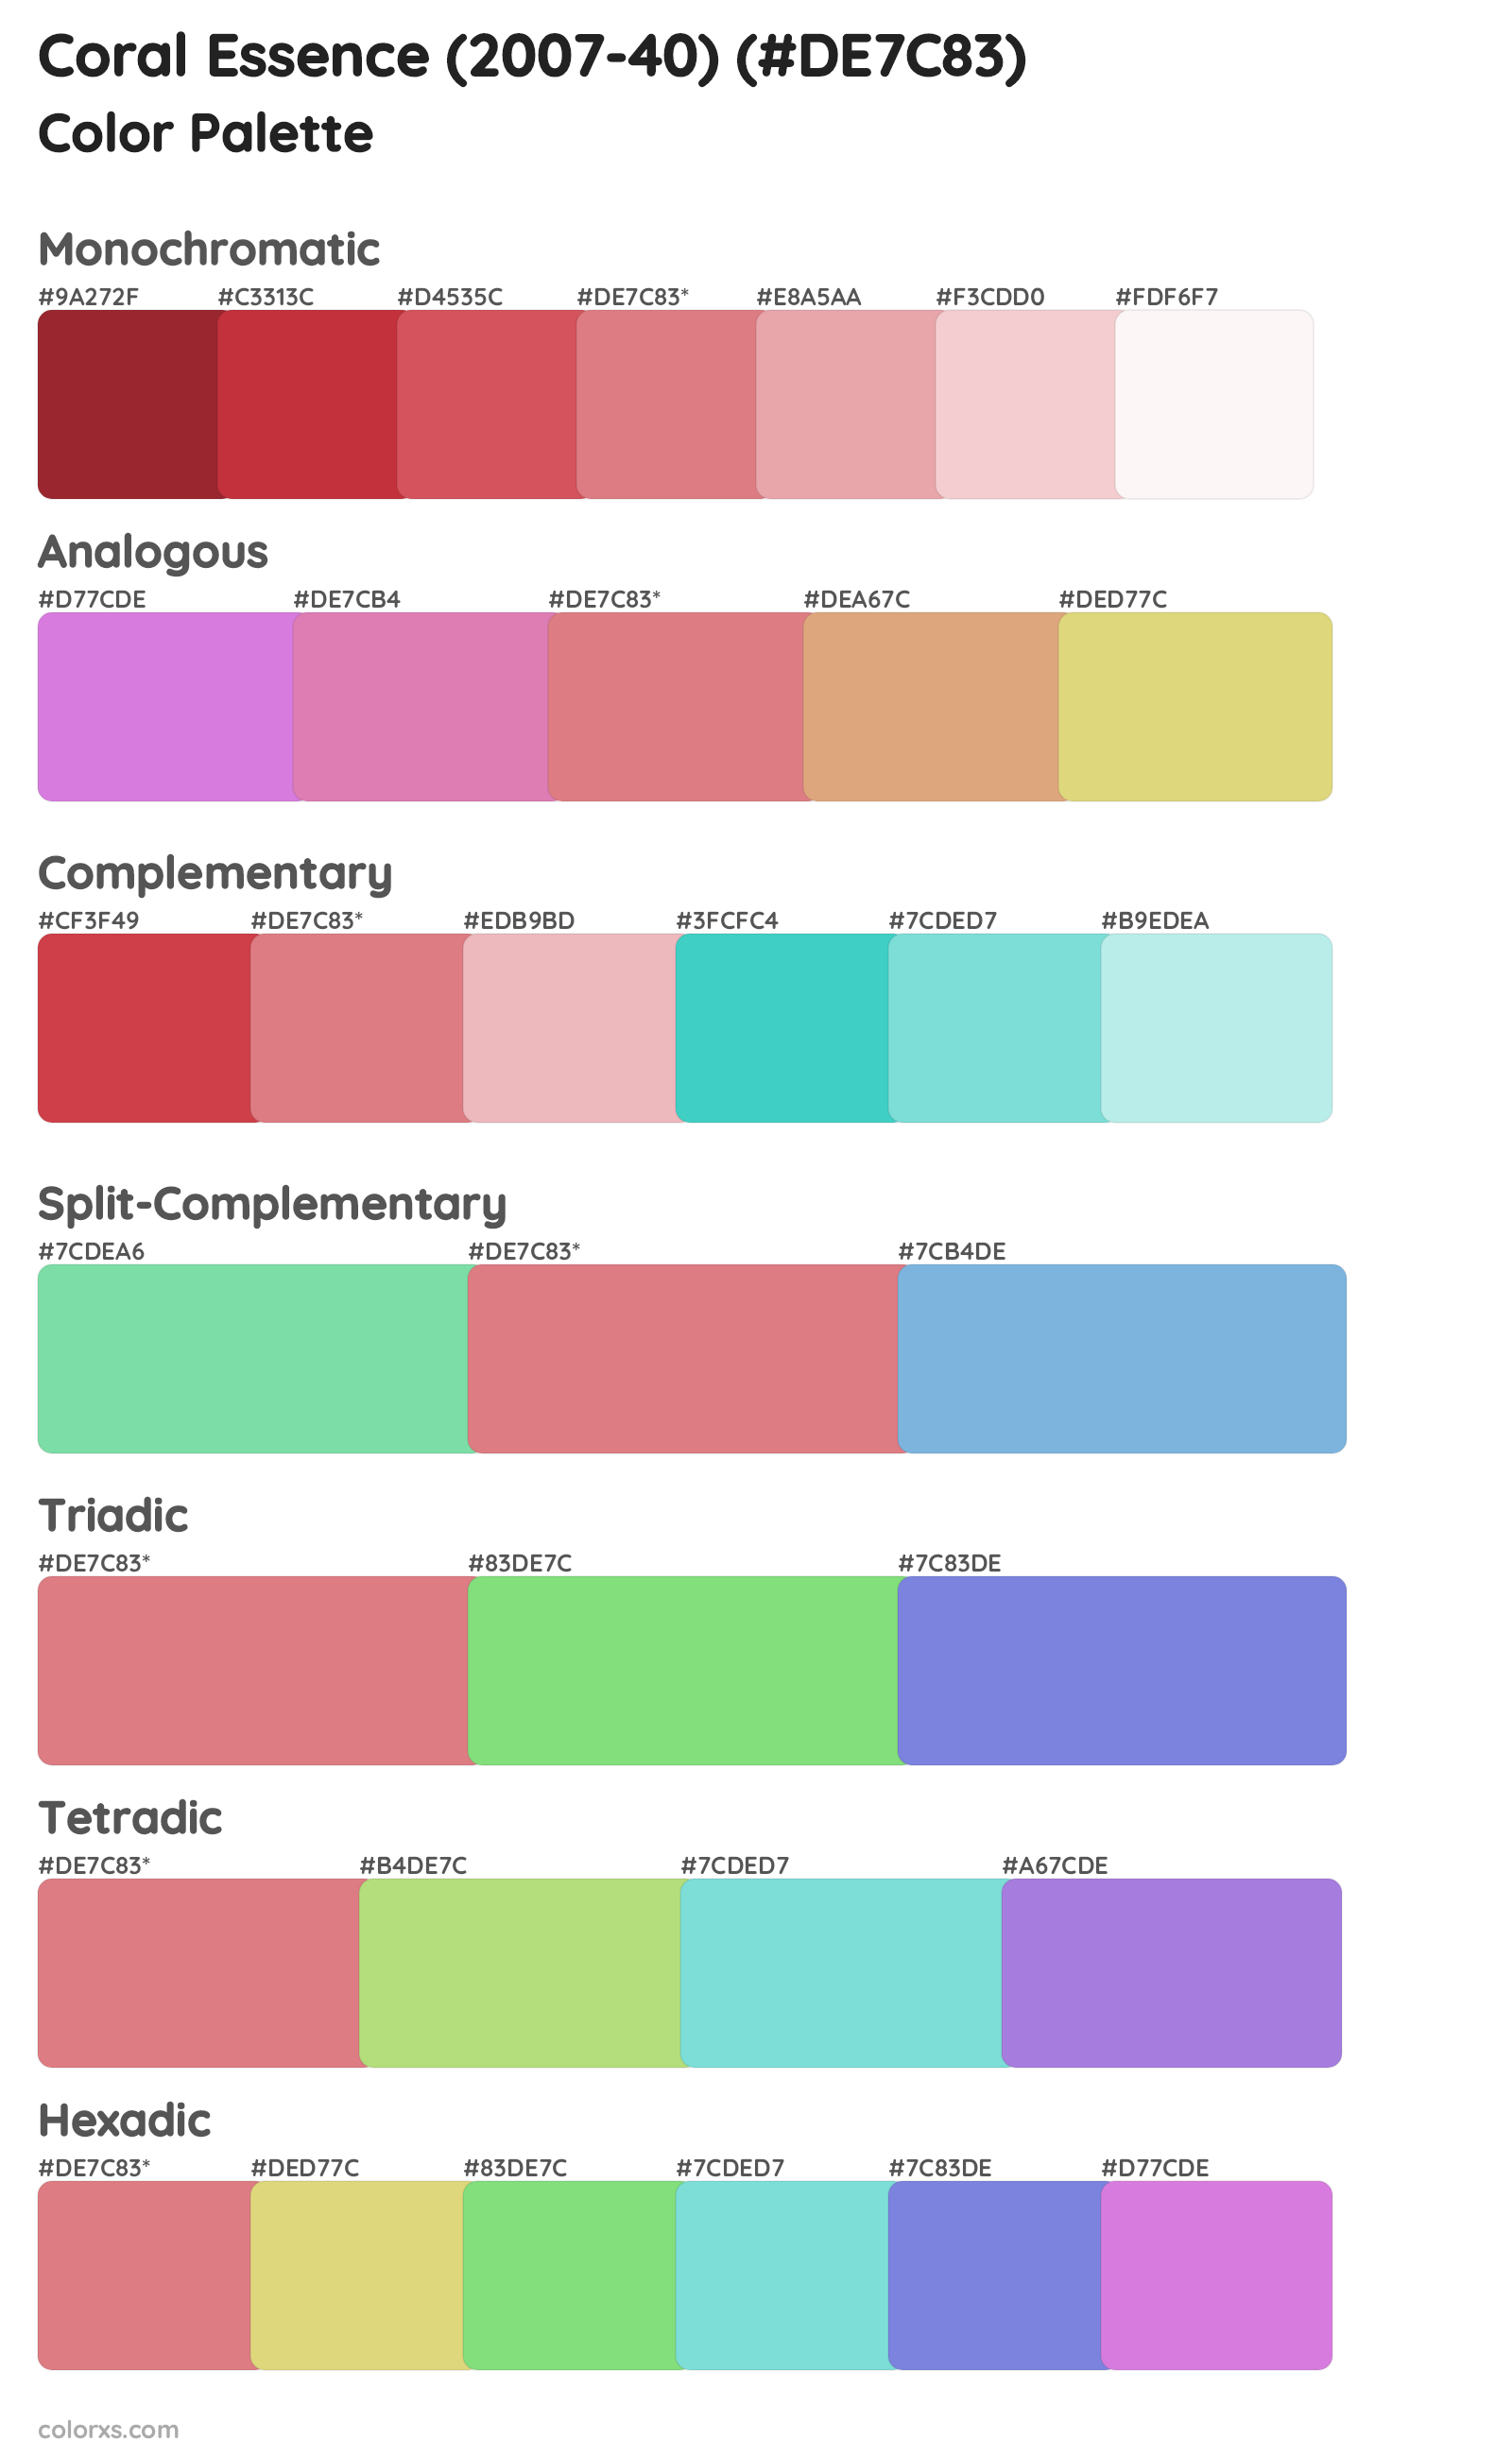 Coral Essence (2007-40) Color Scheme Palettes